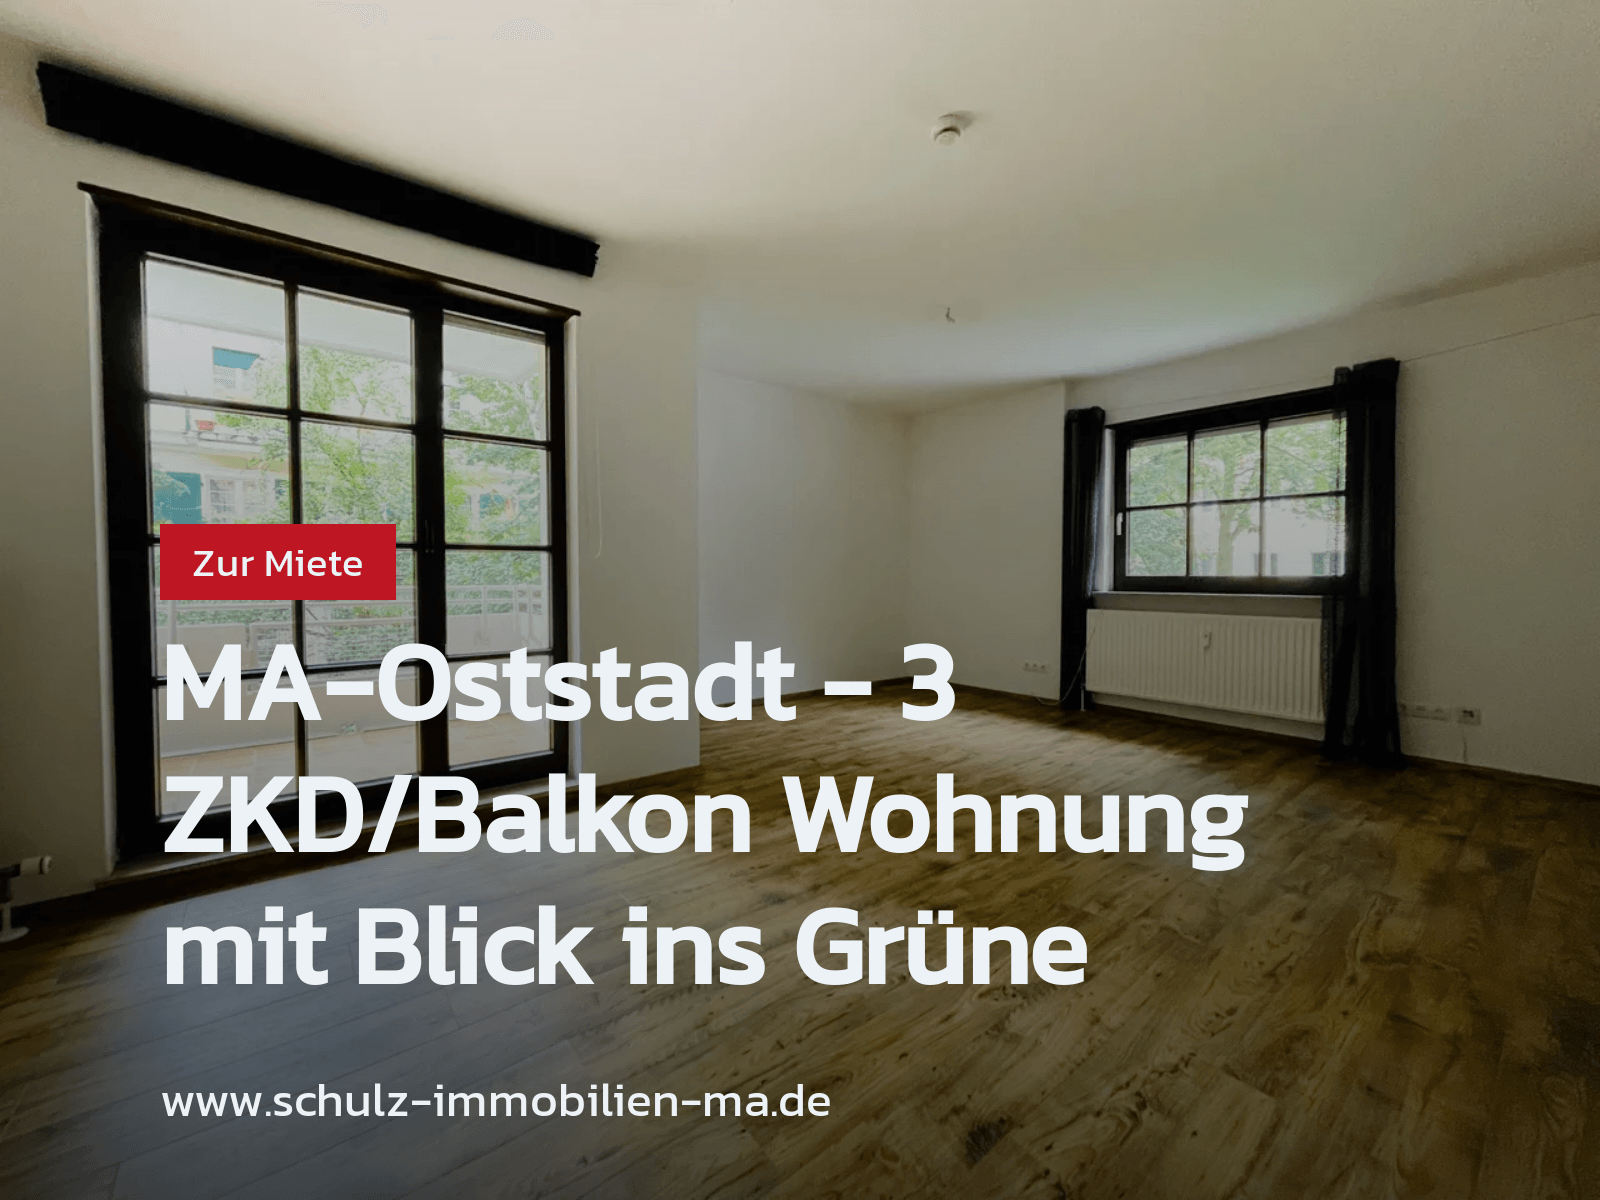 Neu im Angebot: MA-Oststadt – 3 ZKD/Balkon Wohnung mit Blick ins Grüne